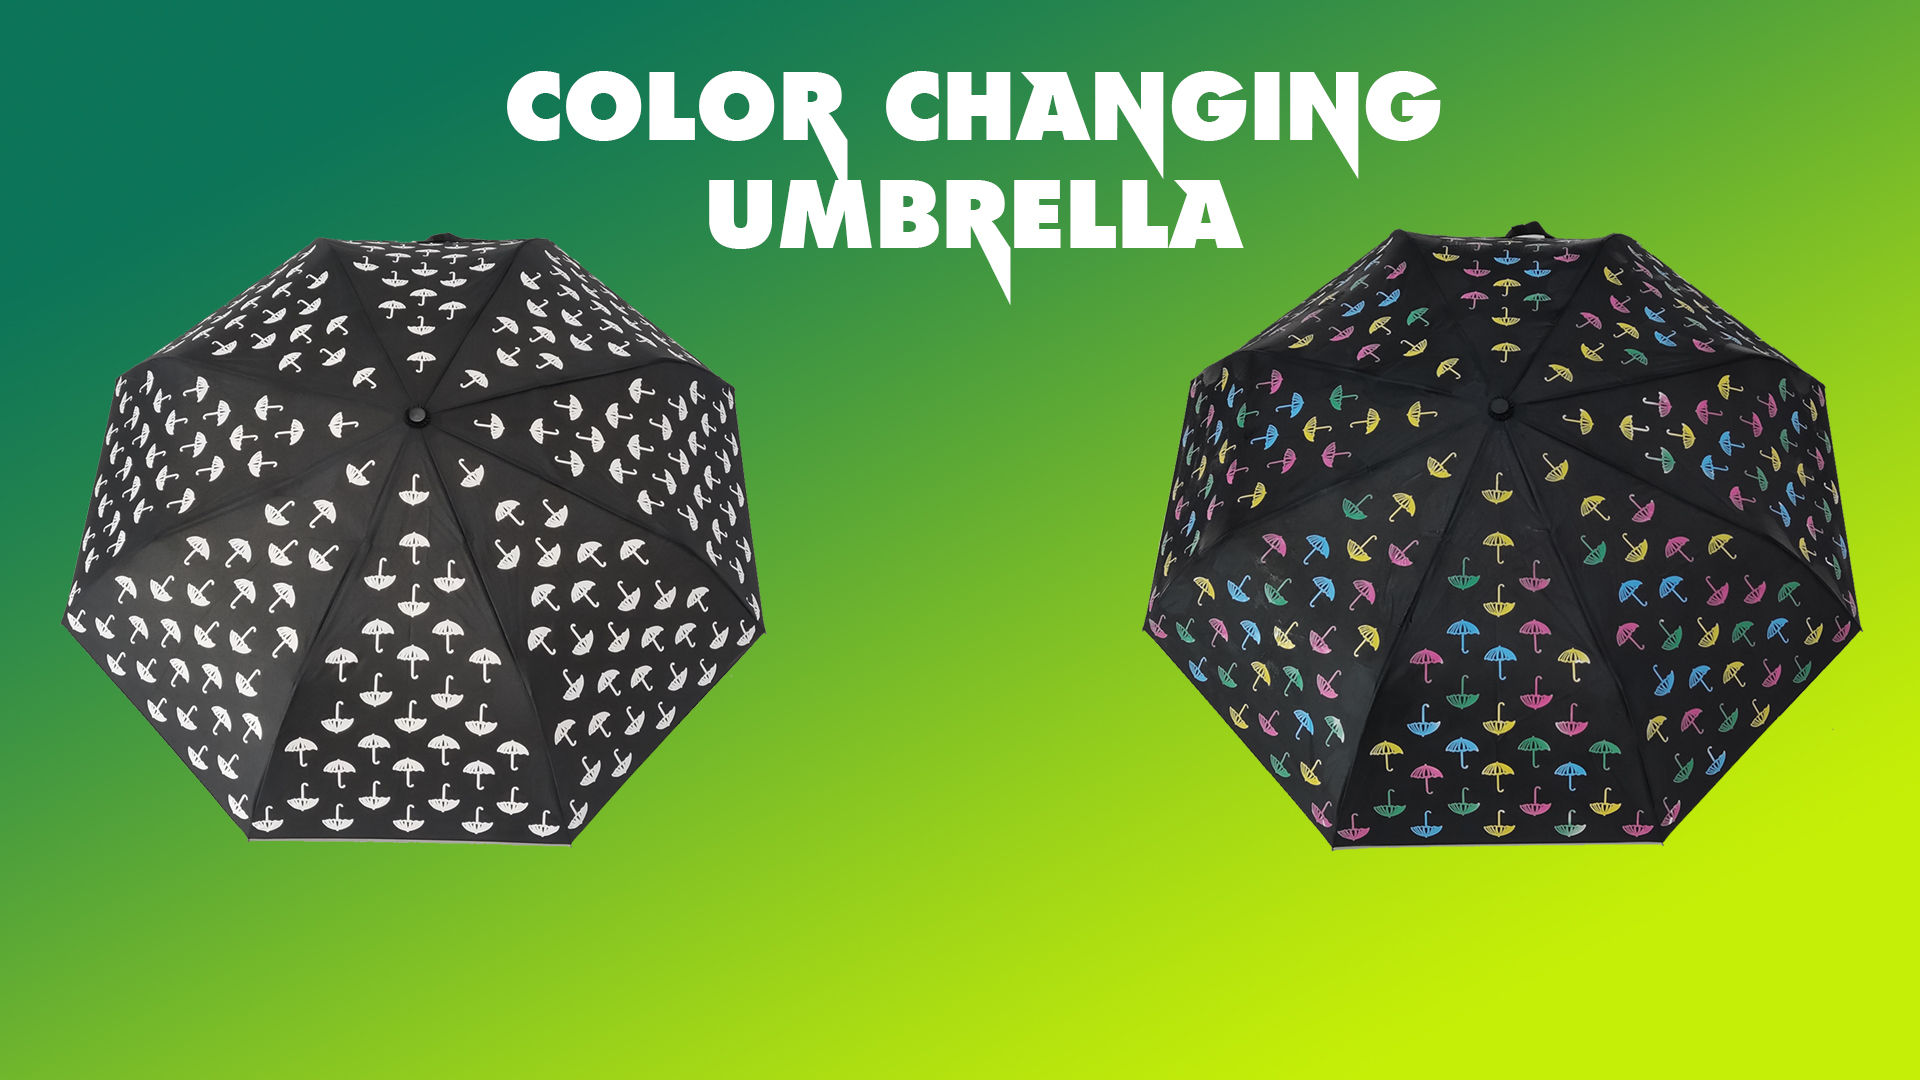 Kišobran koji mijenja boju